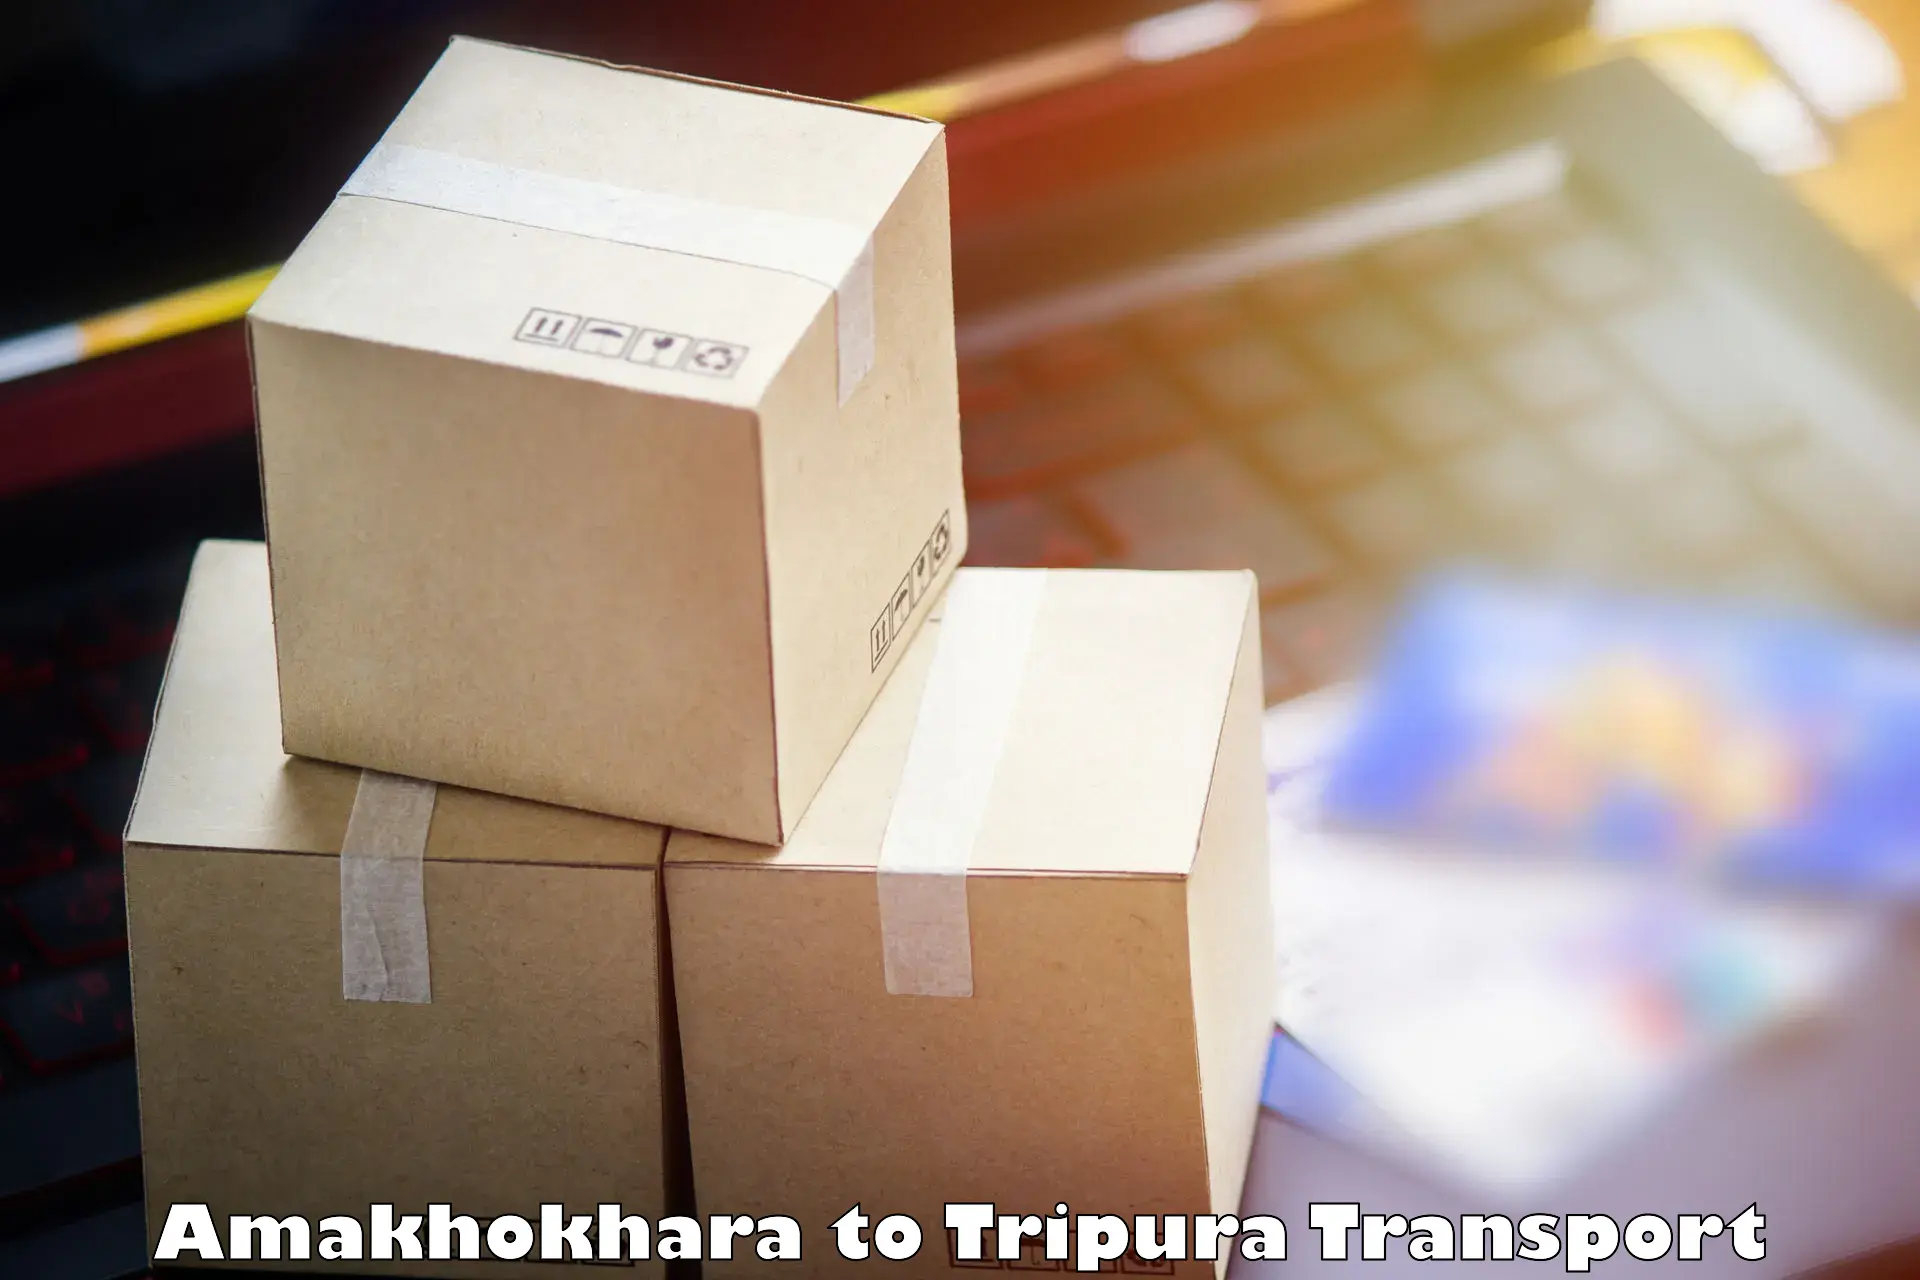 Shipping partner Amakhokhara to Udaipur Tripura